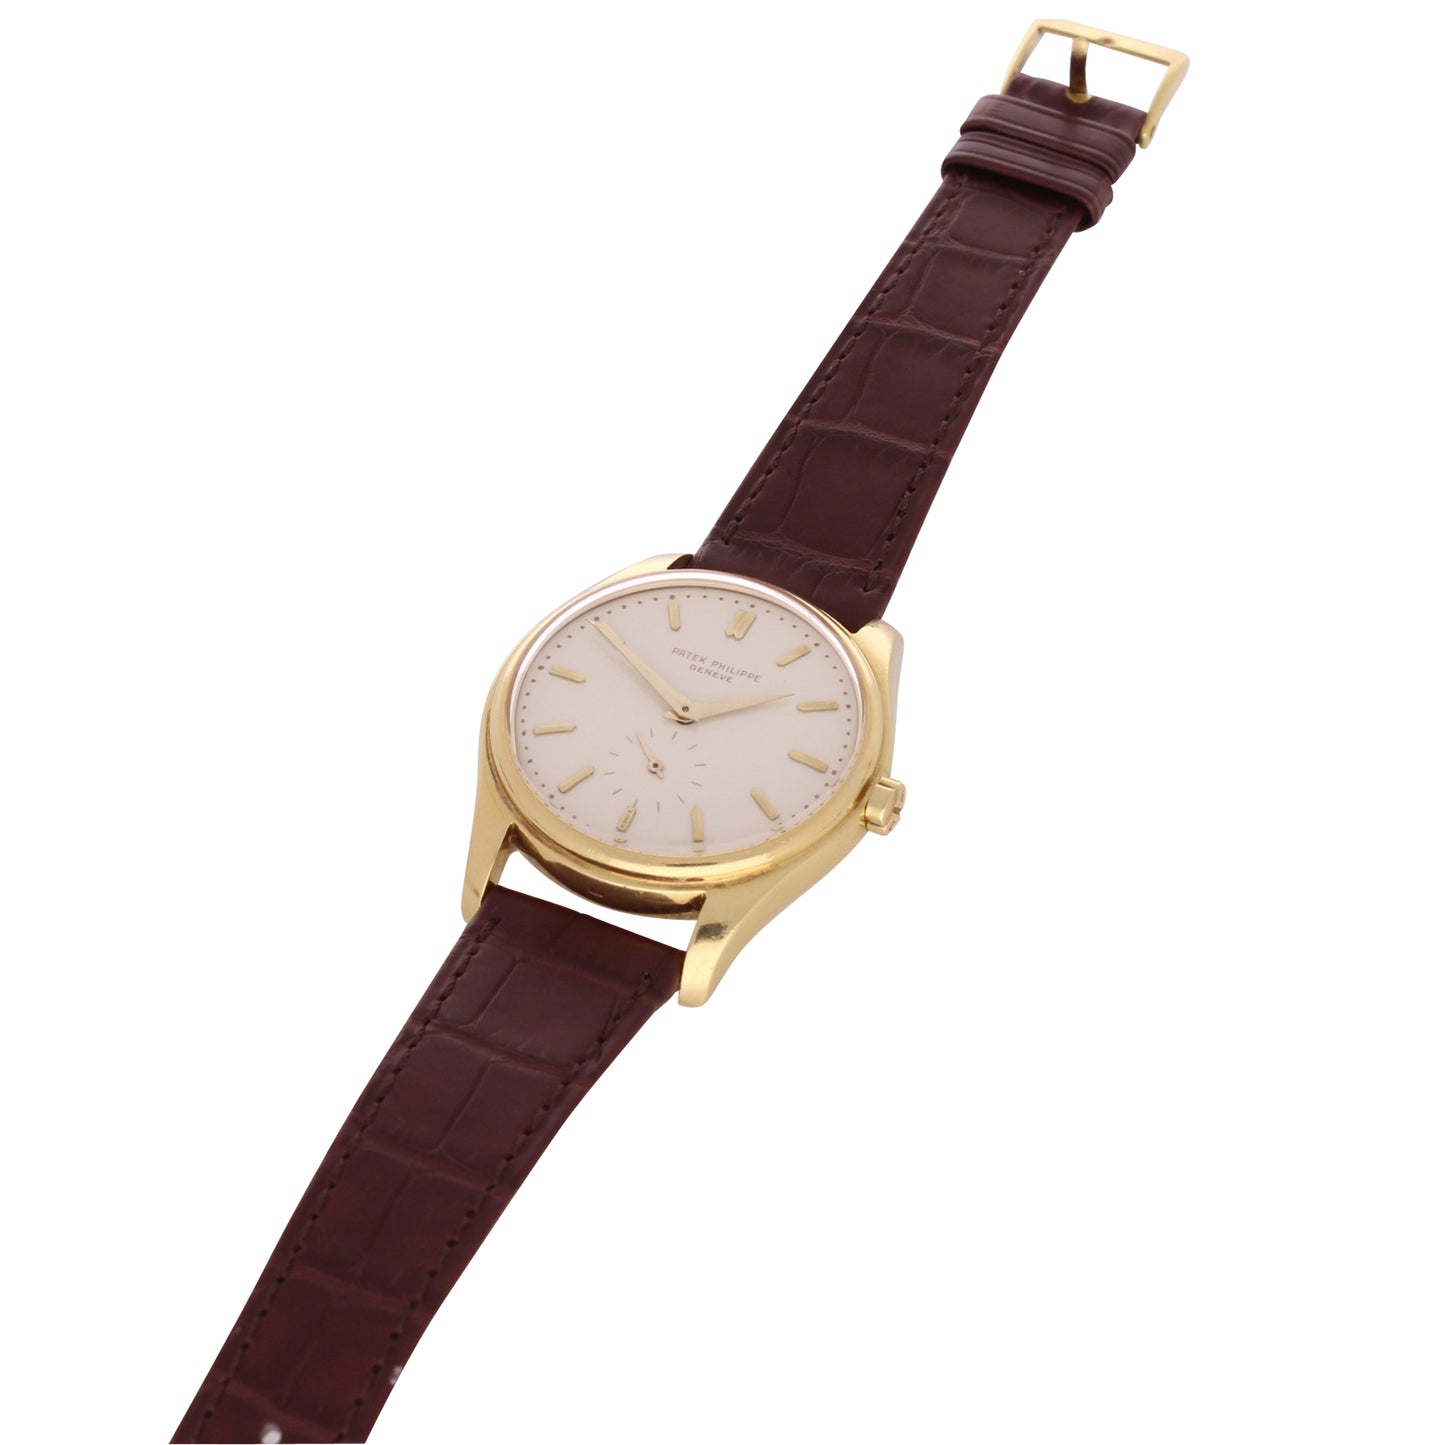 18ct yellow gold Patek Philippe reference 2526 Calatrava automatic wristwatch. Made 1957